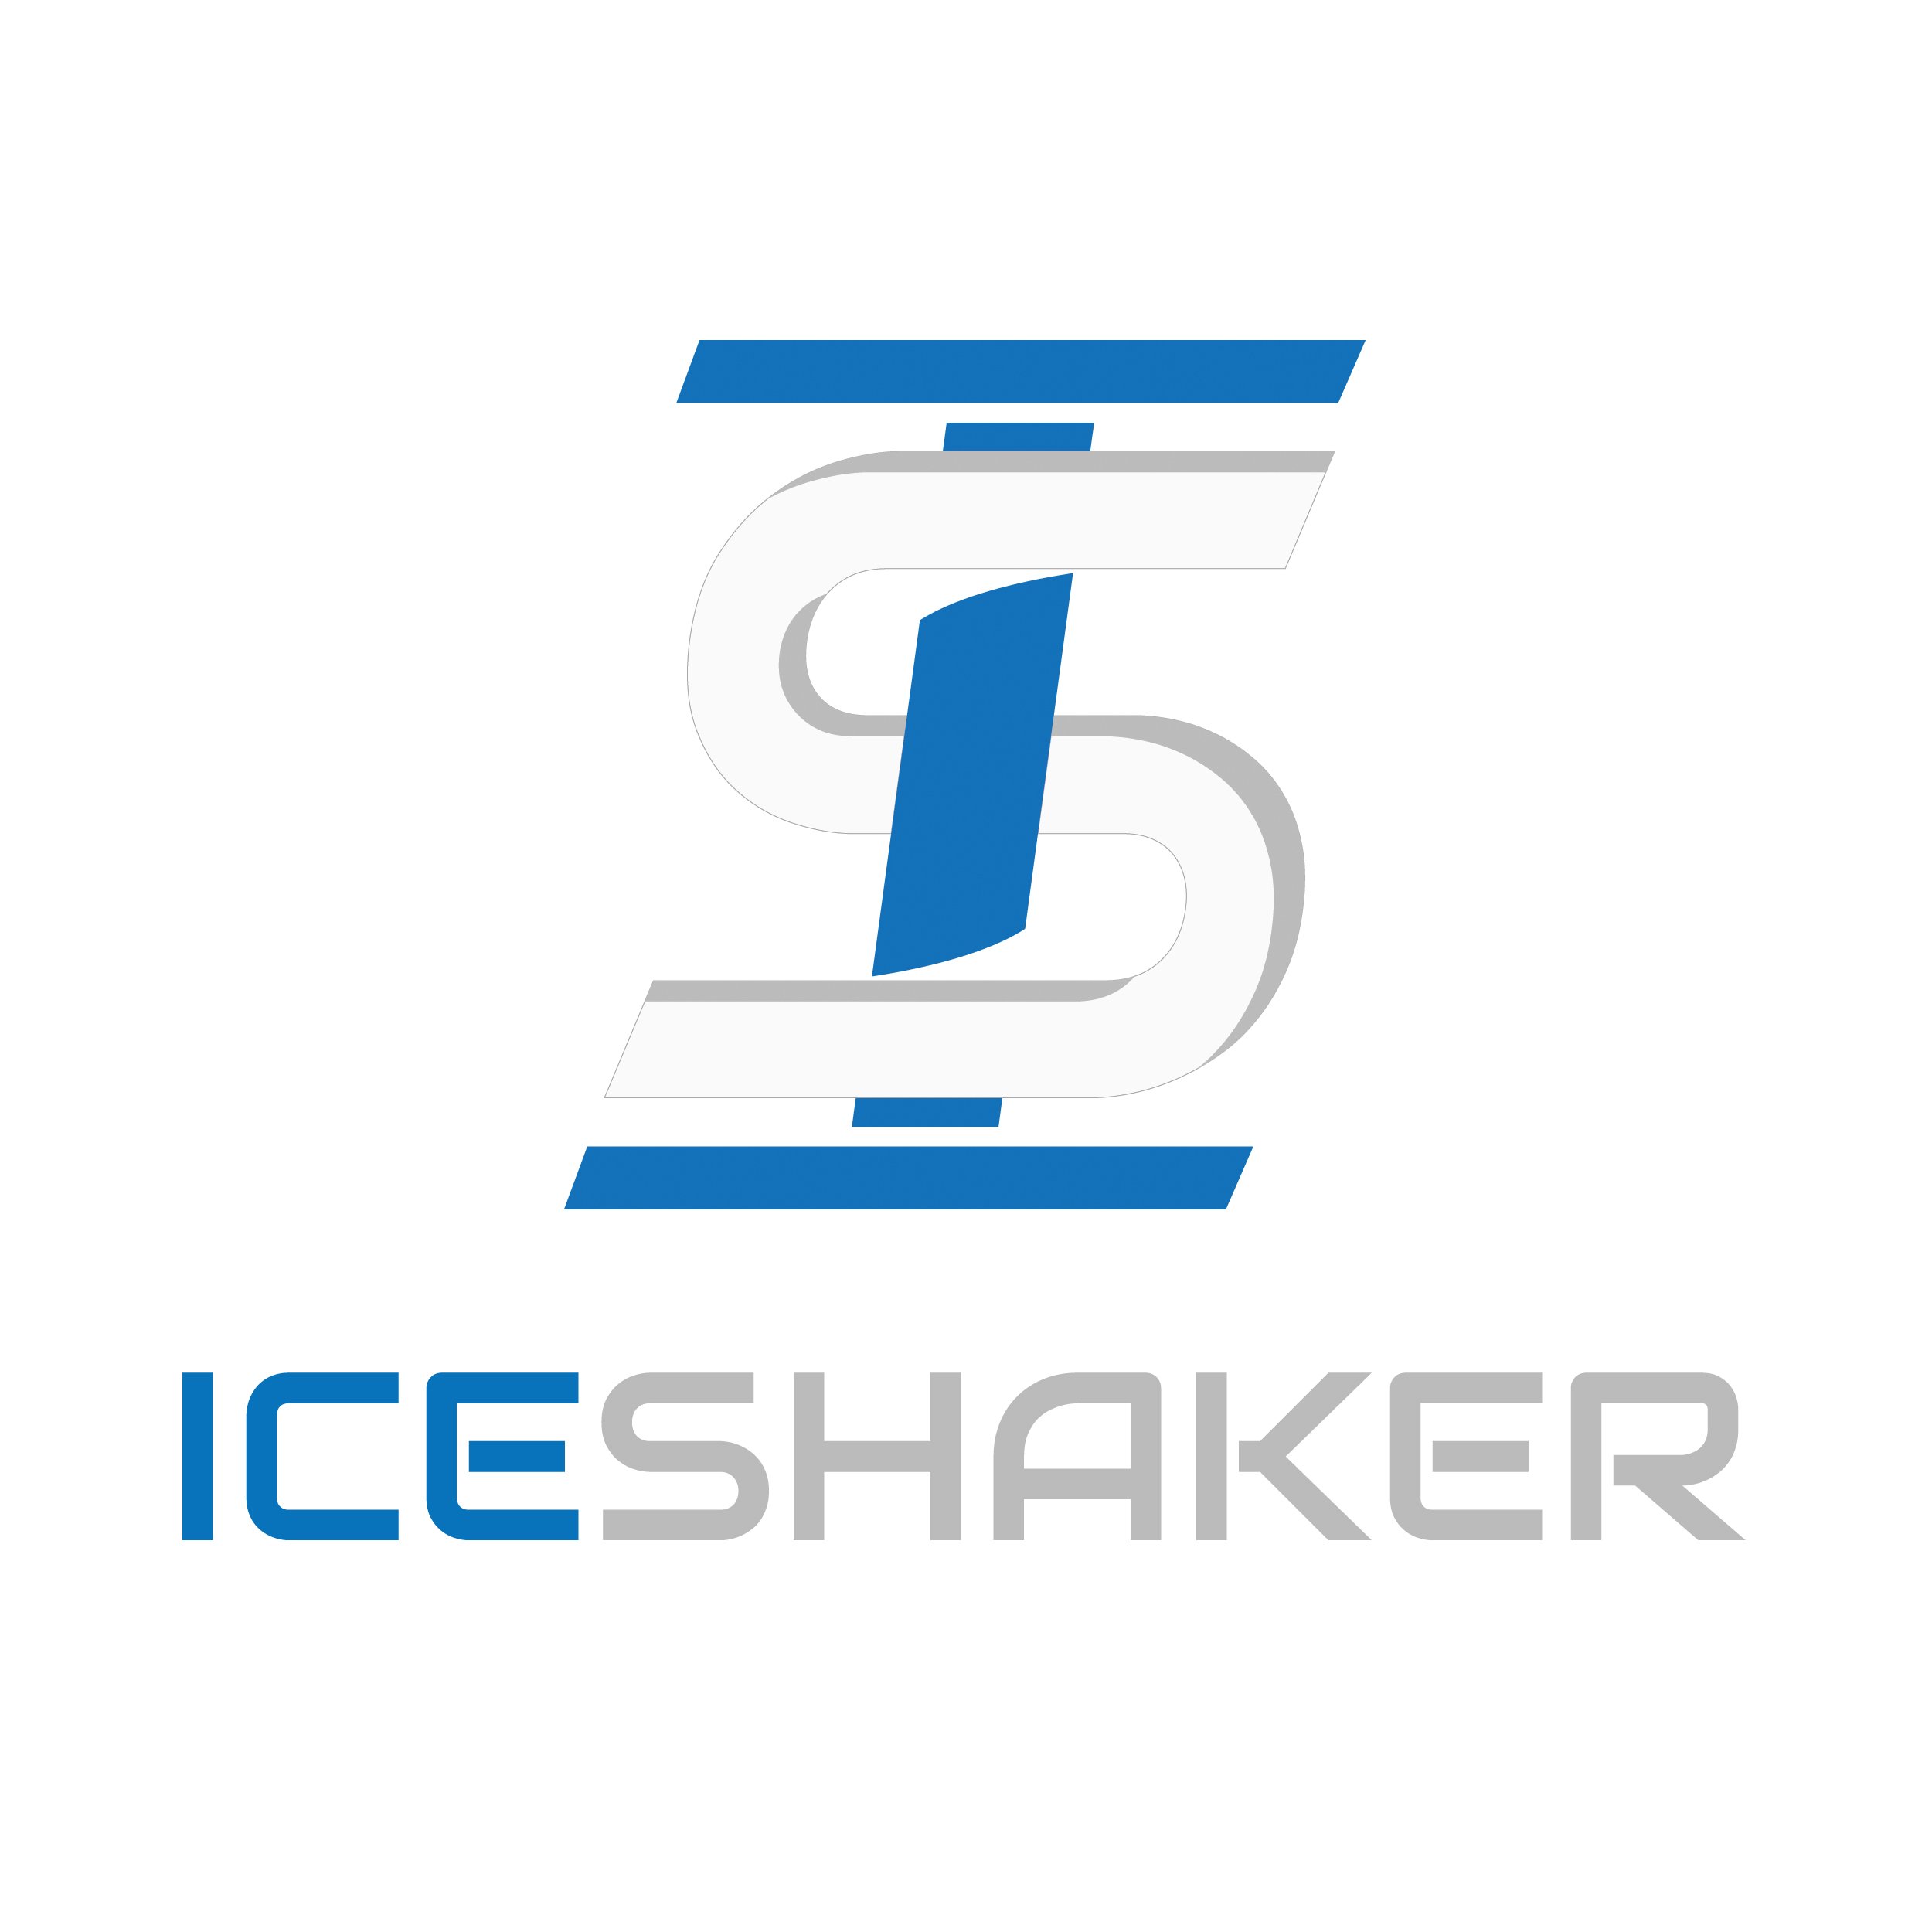 ice shaker logo.jpg